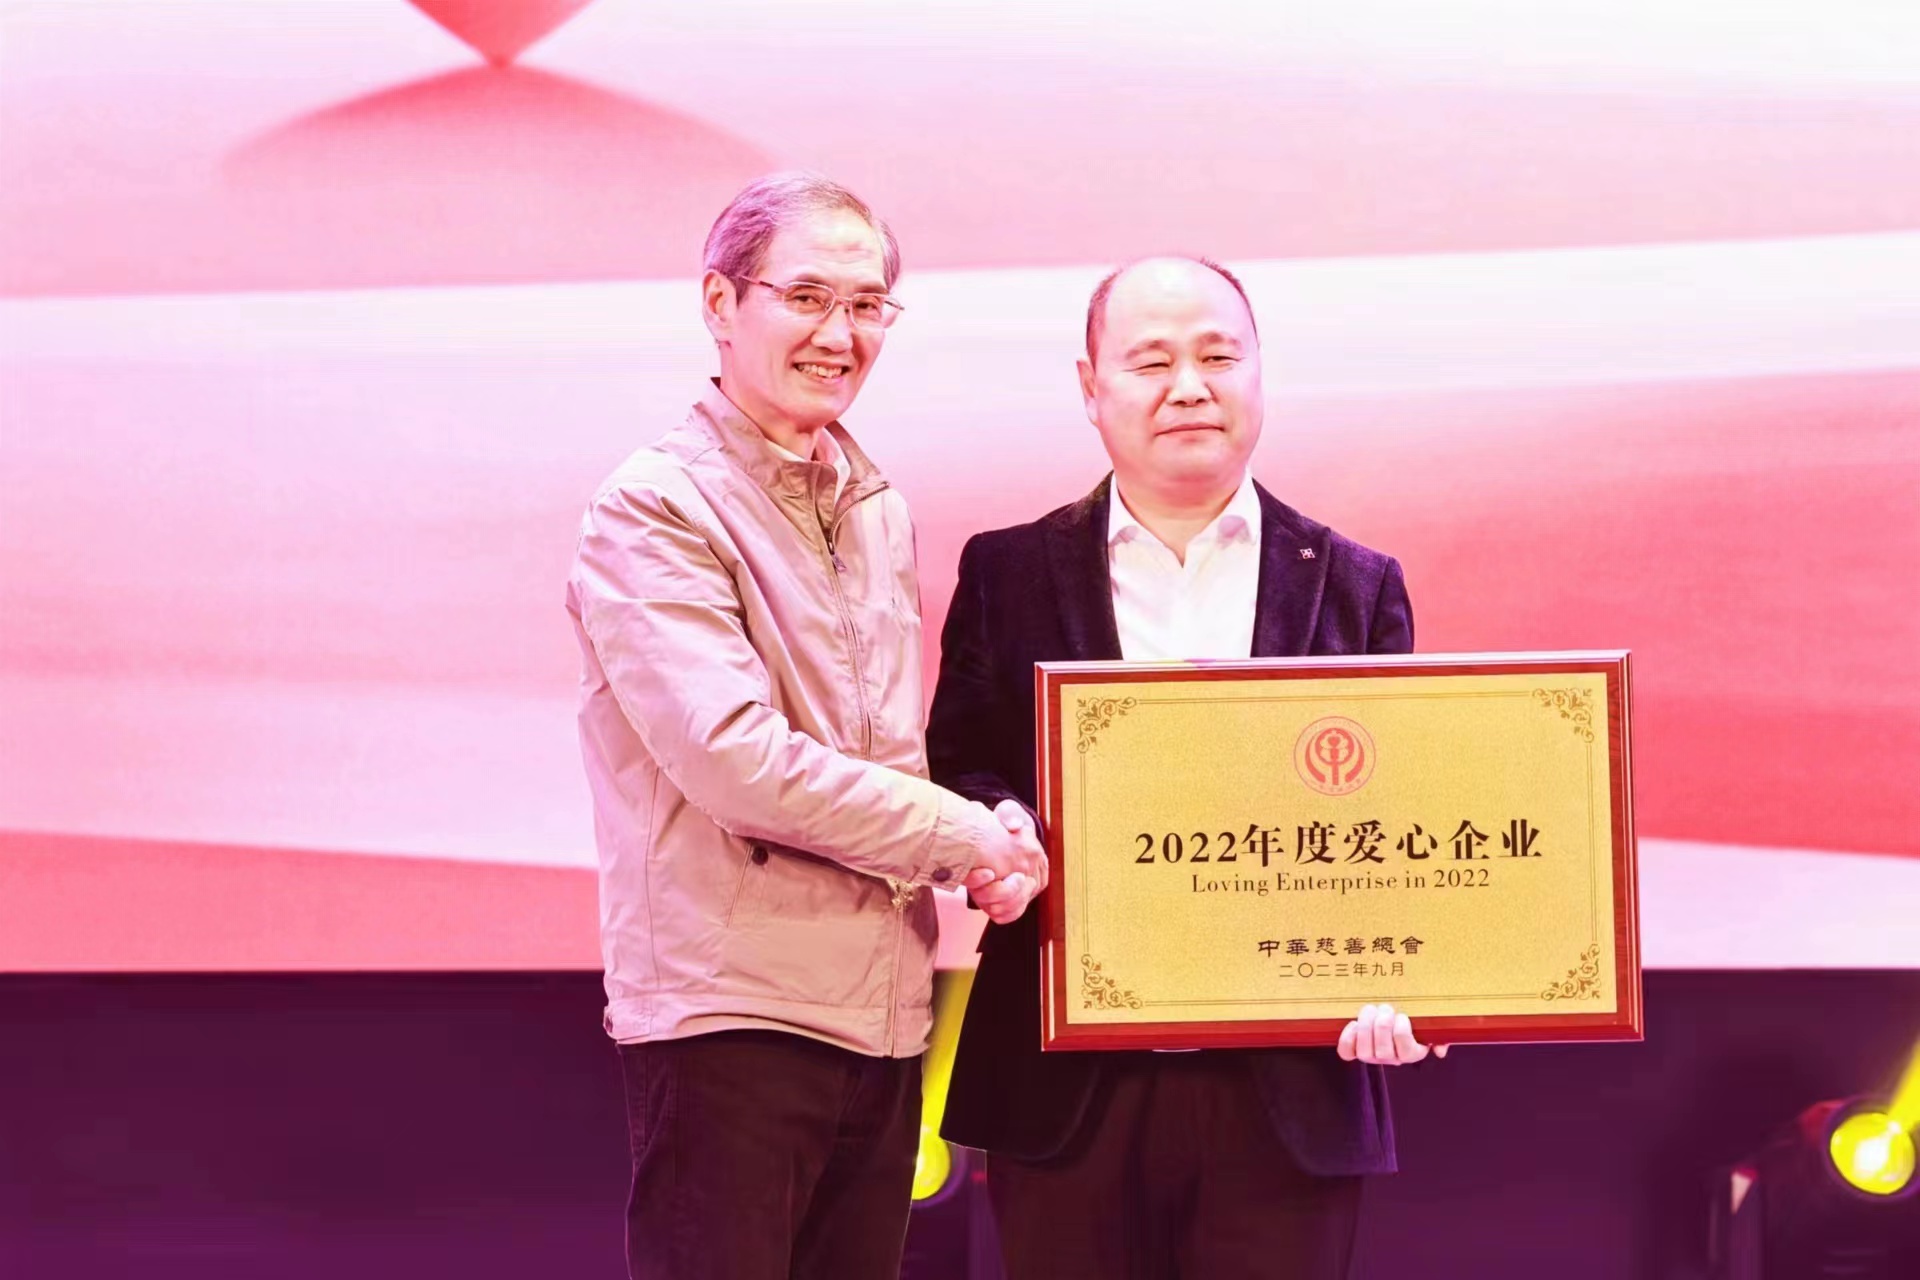 中華慈善總會頒授博陽新能“2022年度愛心企業”獎牌